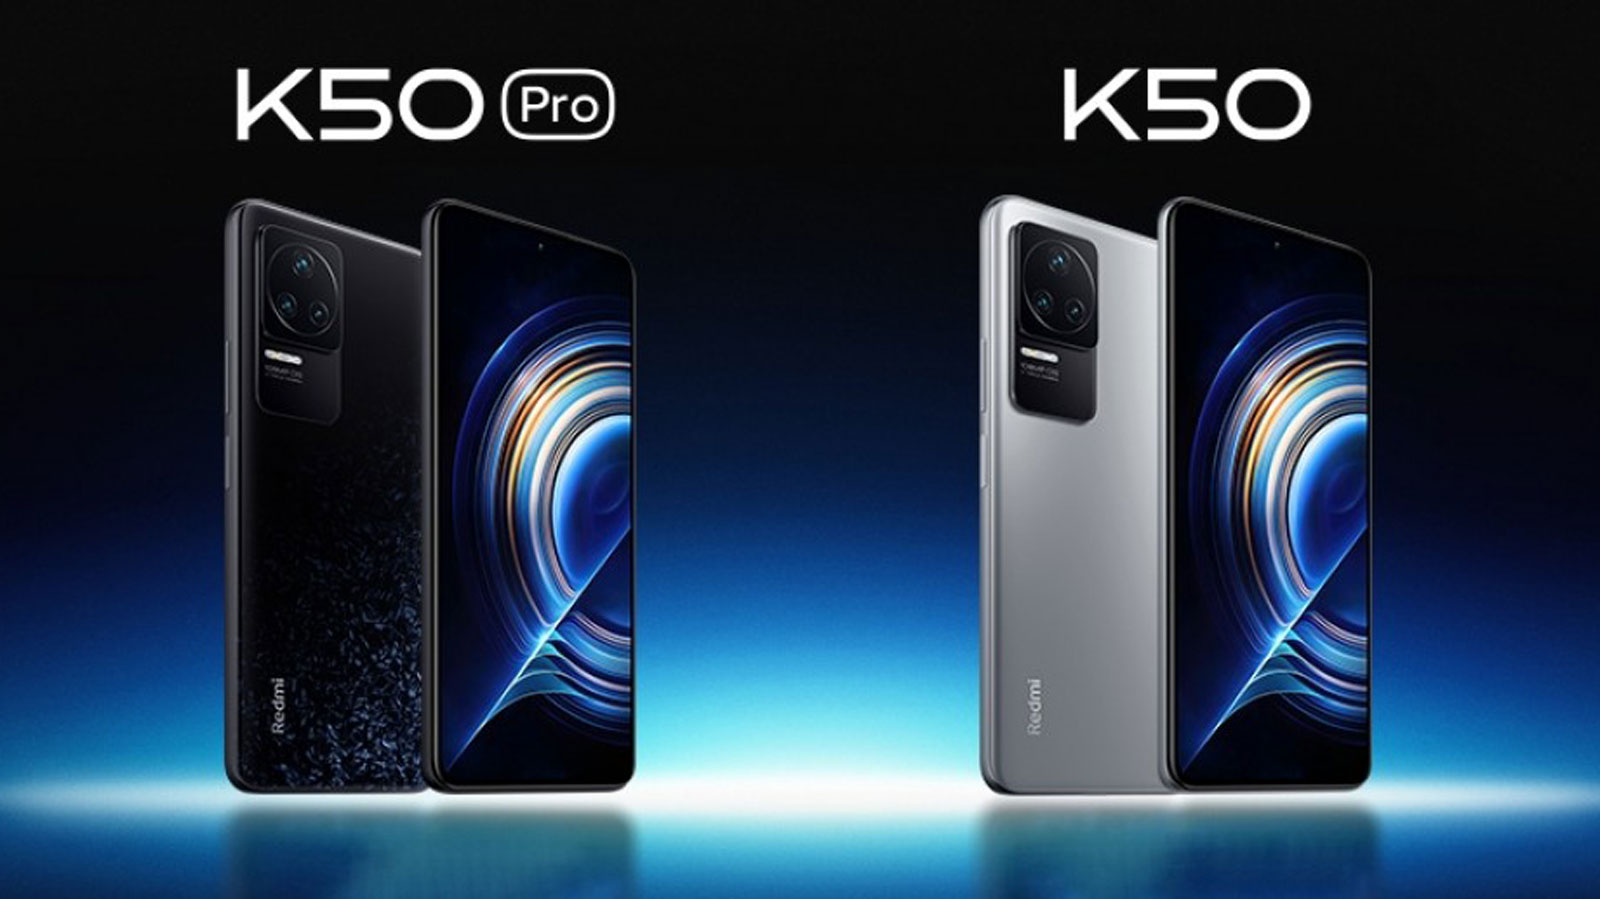 فروش ردمی K50 در روز اول از مرز 330 هزار دستگاه گذشت